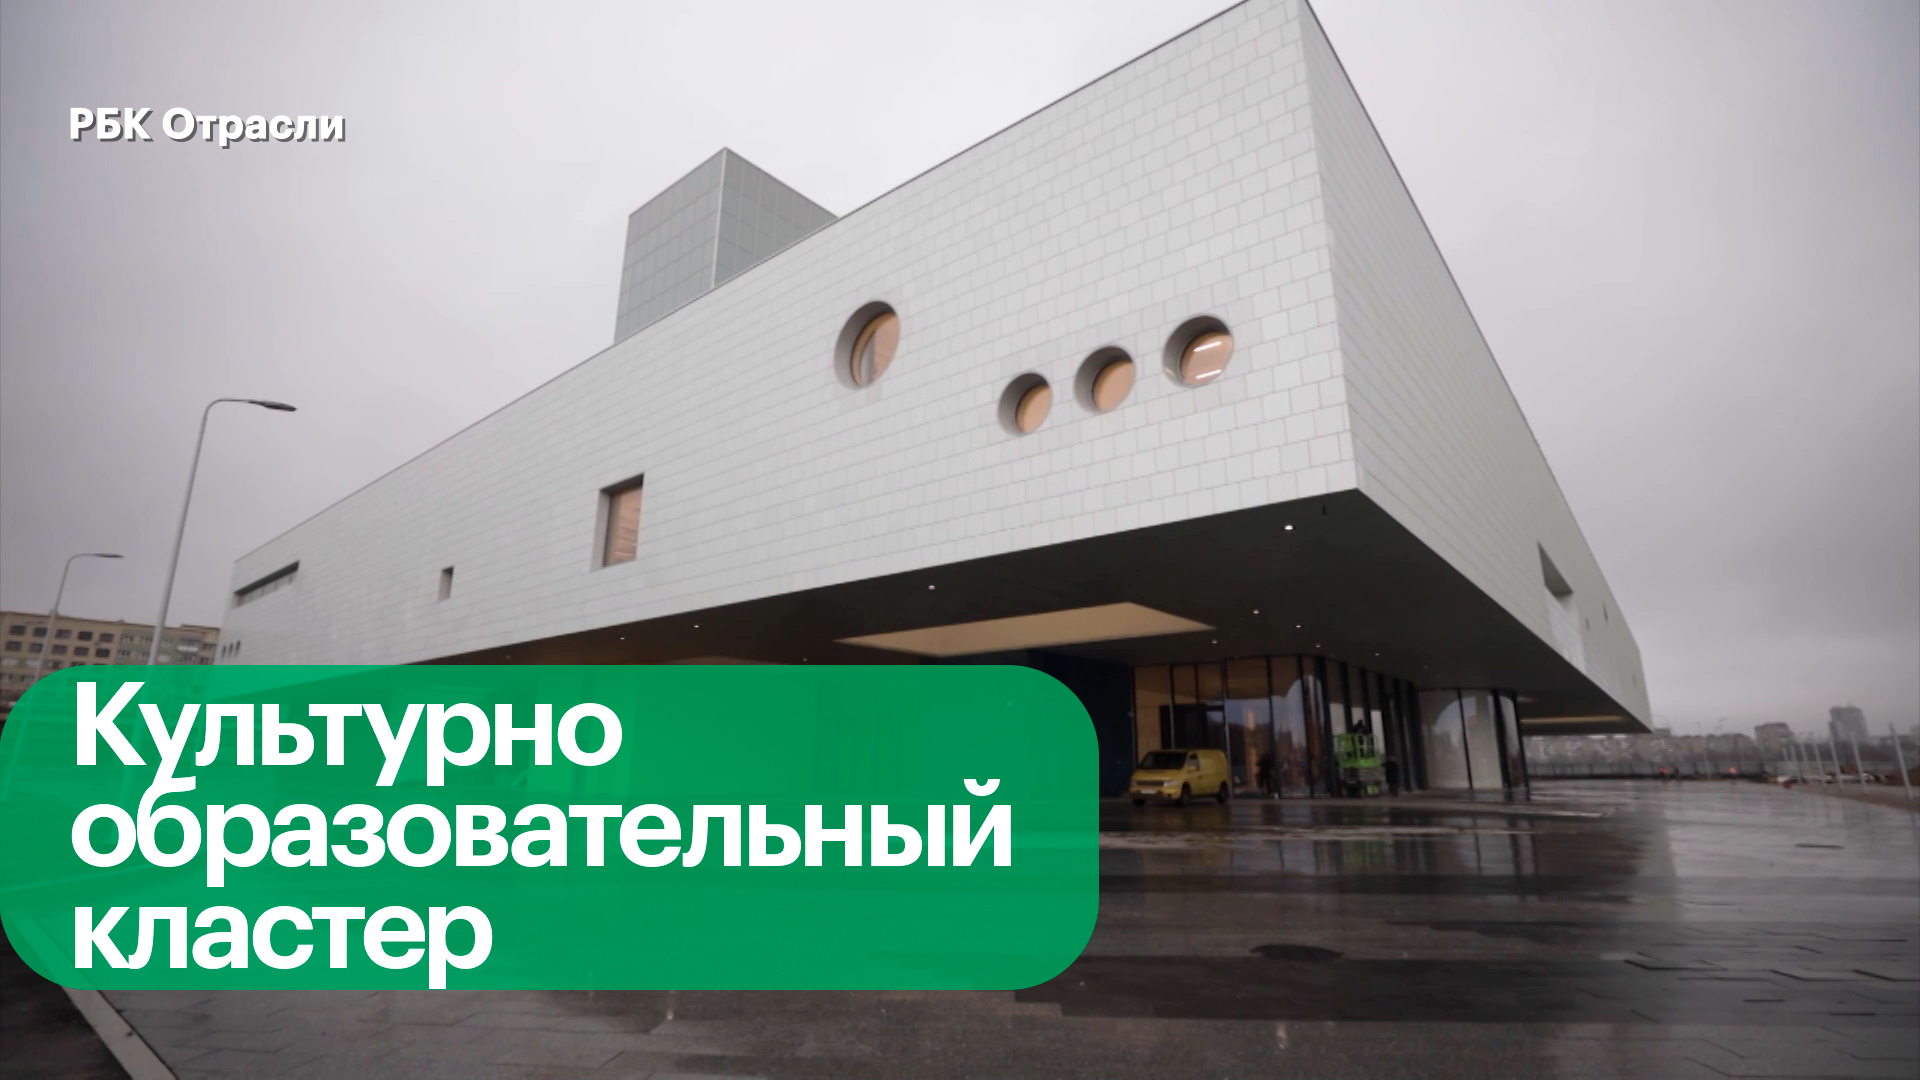 Новое здание филиала Третьяковской галереи в Калининграде